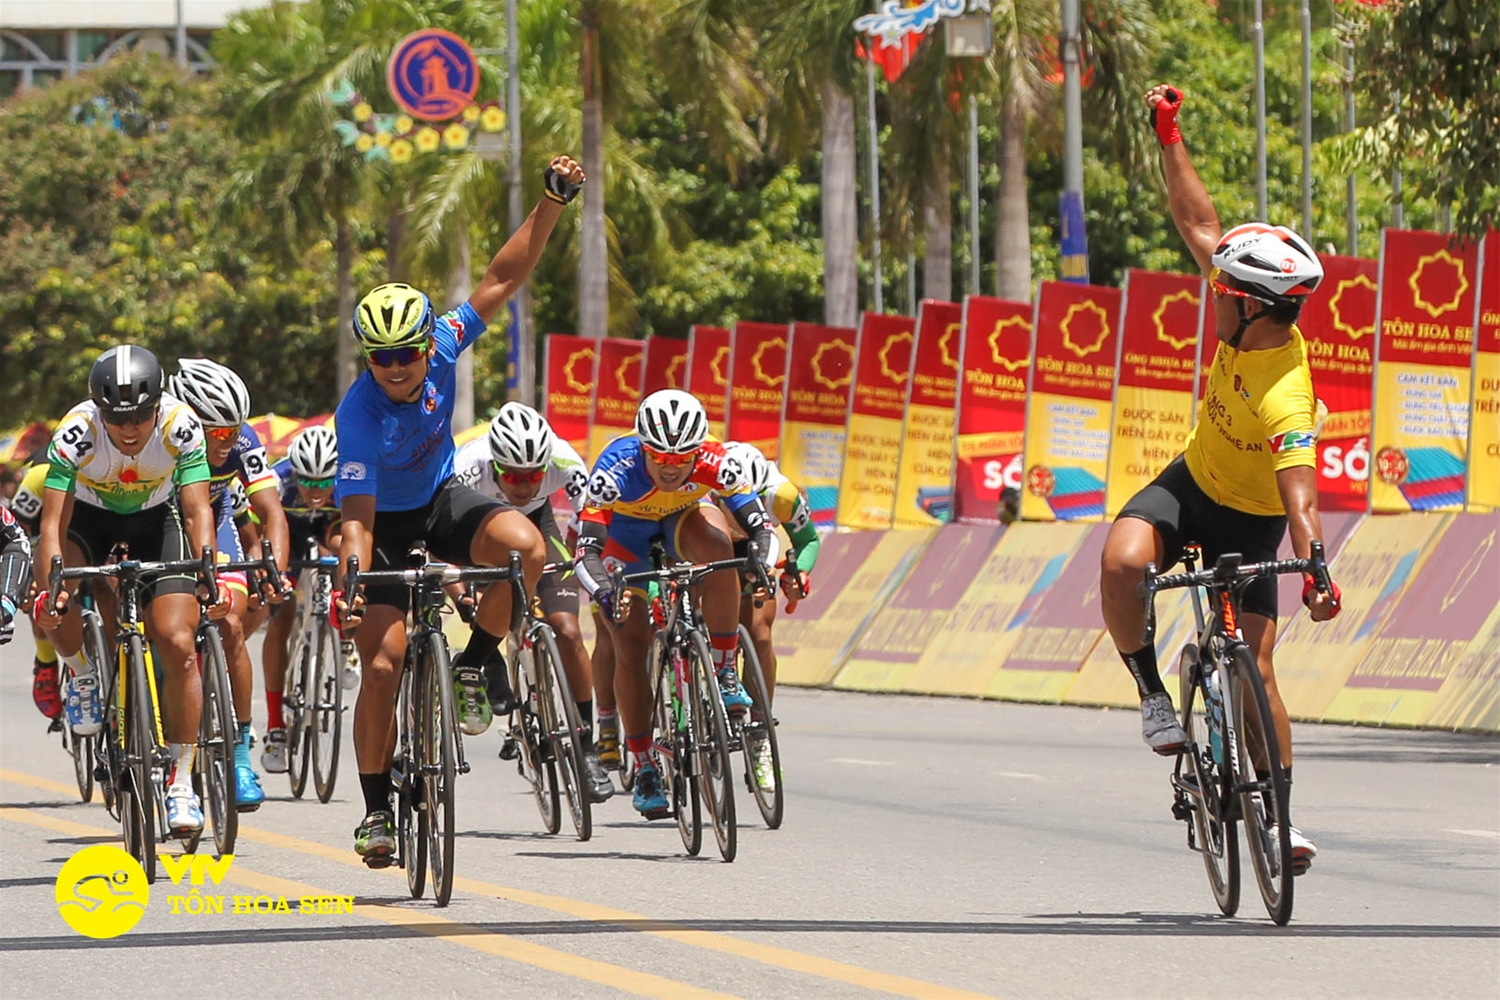 Lịch trình cấm đường giao thông cho cuộc đua xe đạp quốc tế VTV cúp Tôn Hoa Sen 2018